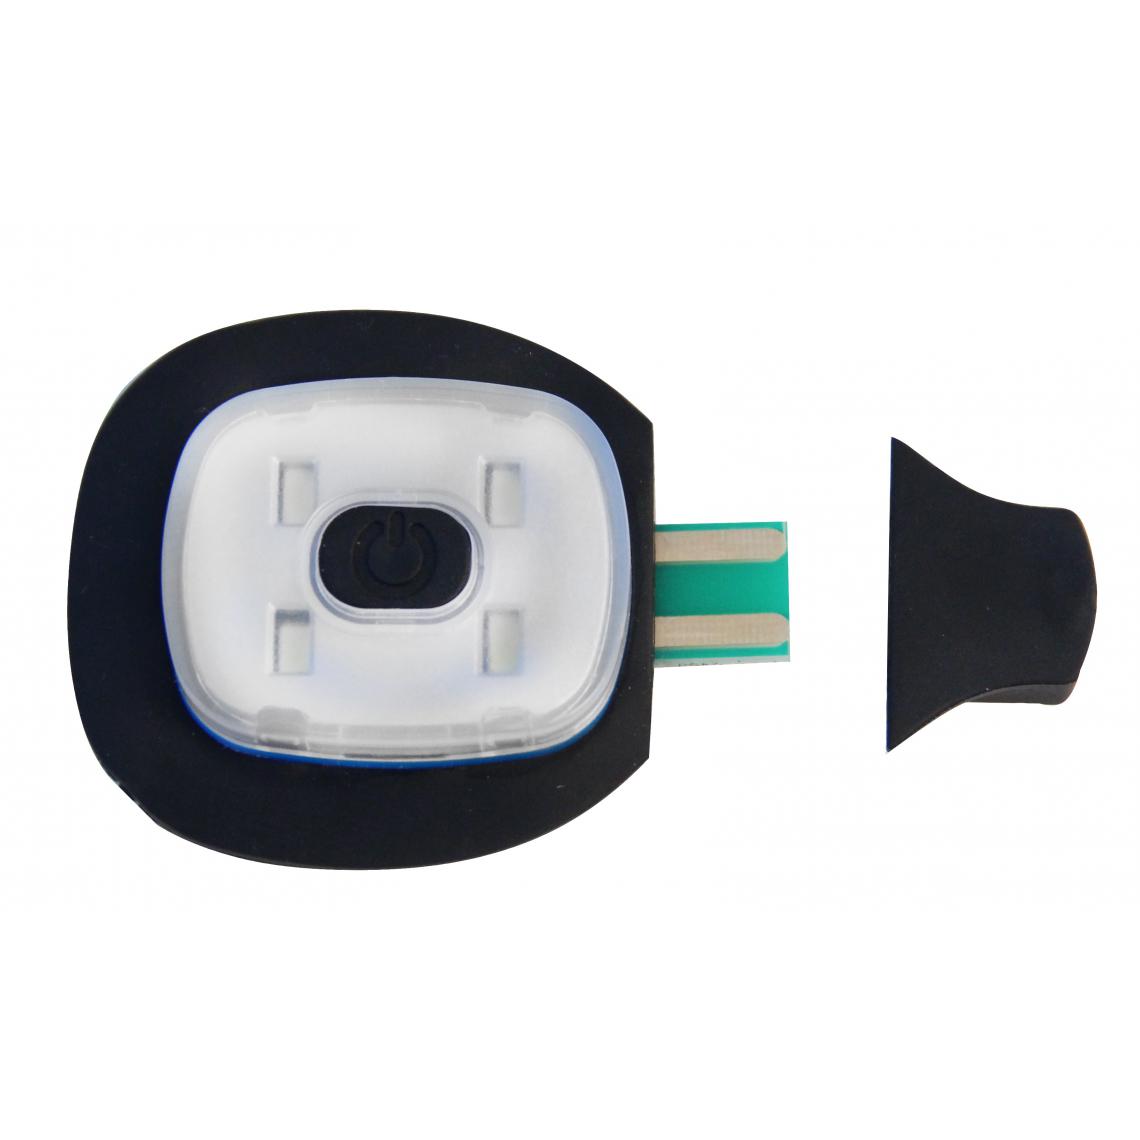 Apple - CAPLED : Lampe LED de remplacement pour les bonnets séries CAPXX et ST01X. 4 LED blanches - Lampes portatives sans fil